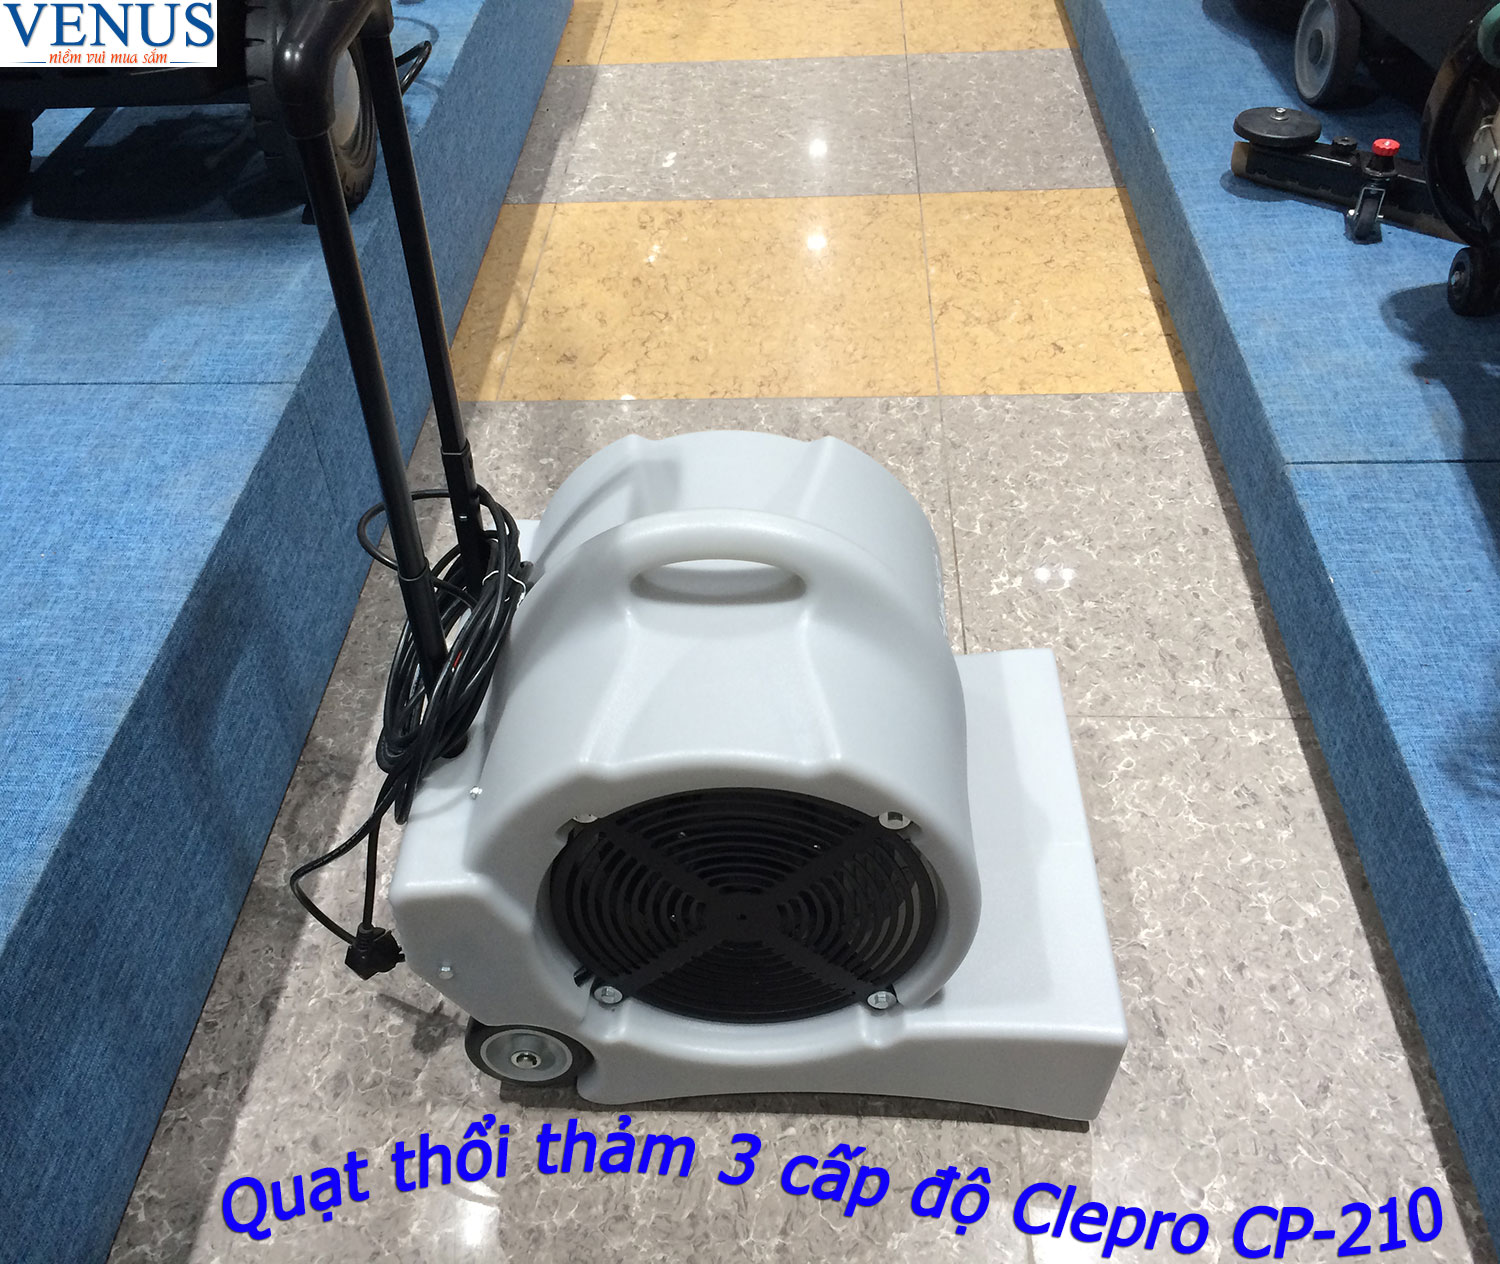 Ảnh Quạt thổi thảm ba cấp độ Clepro CP-210 giá tốt nhất